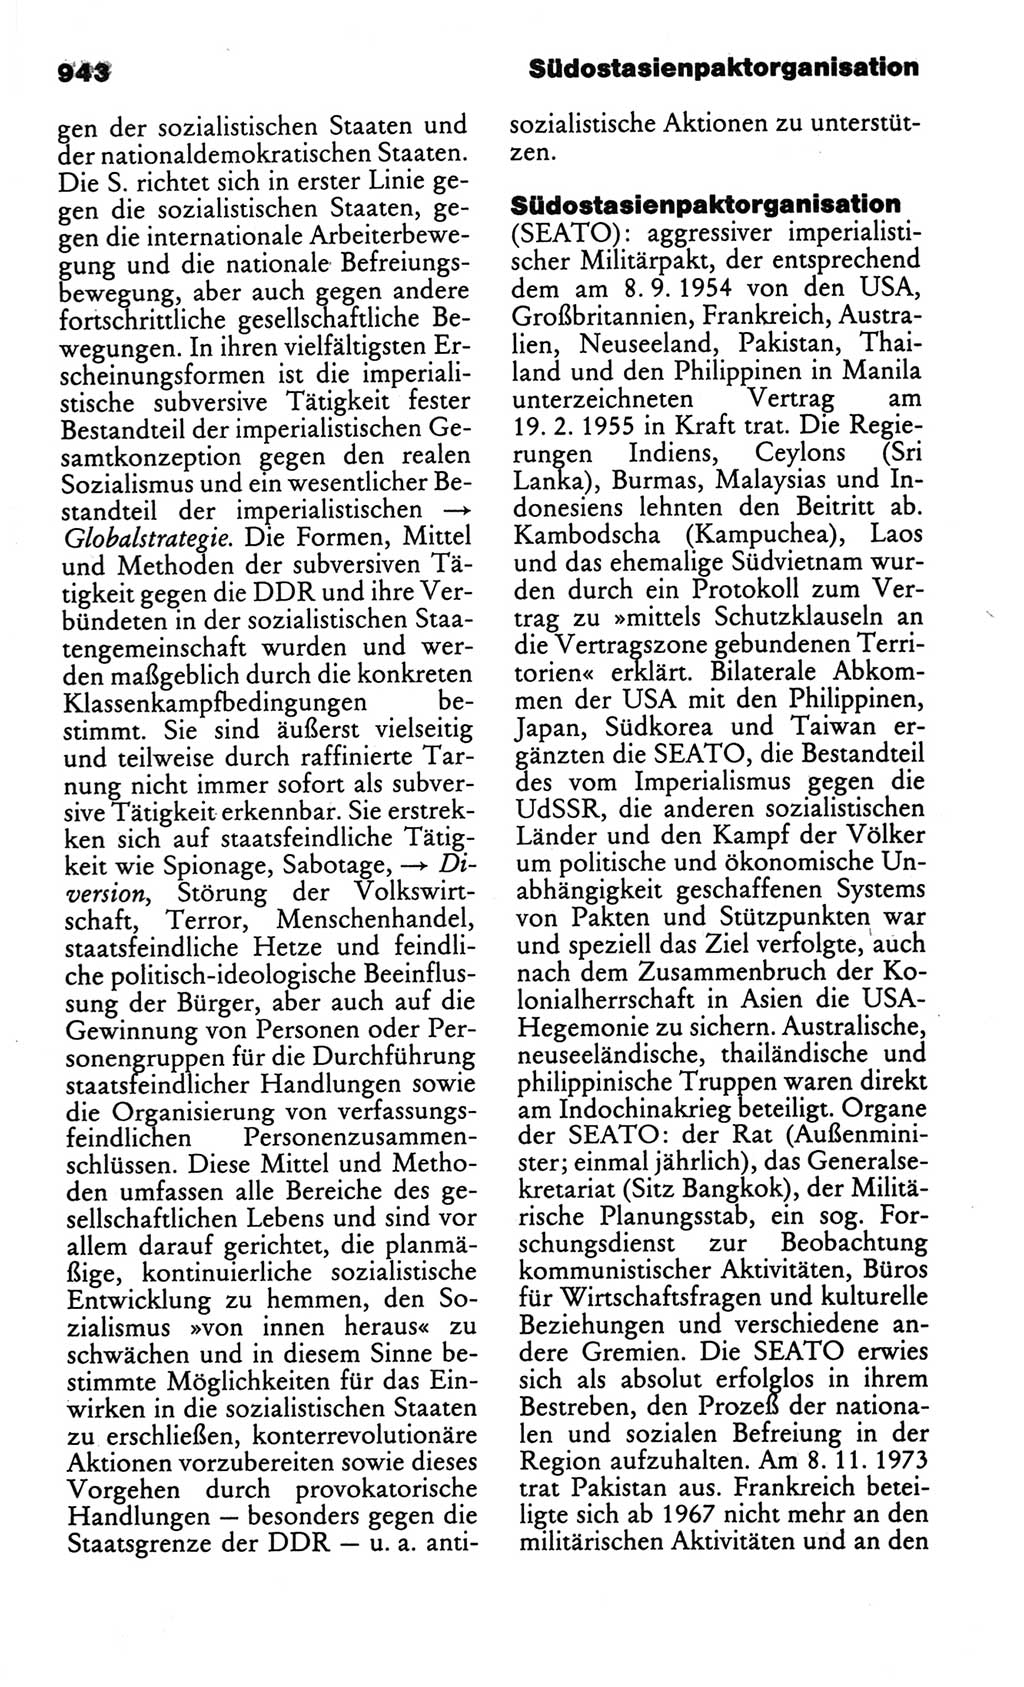 Kleines politisches Wörterbuch [Deutsche Demokratische Republik (DDR)] 1986, Seite 943 (Kl. pol. Wb. DDR 1986, S. 943)